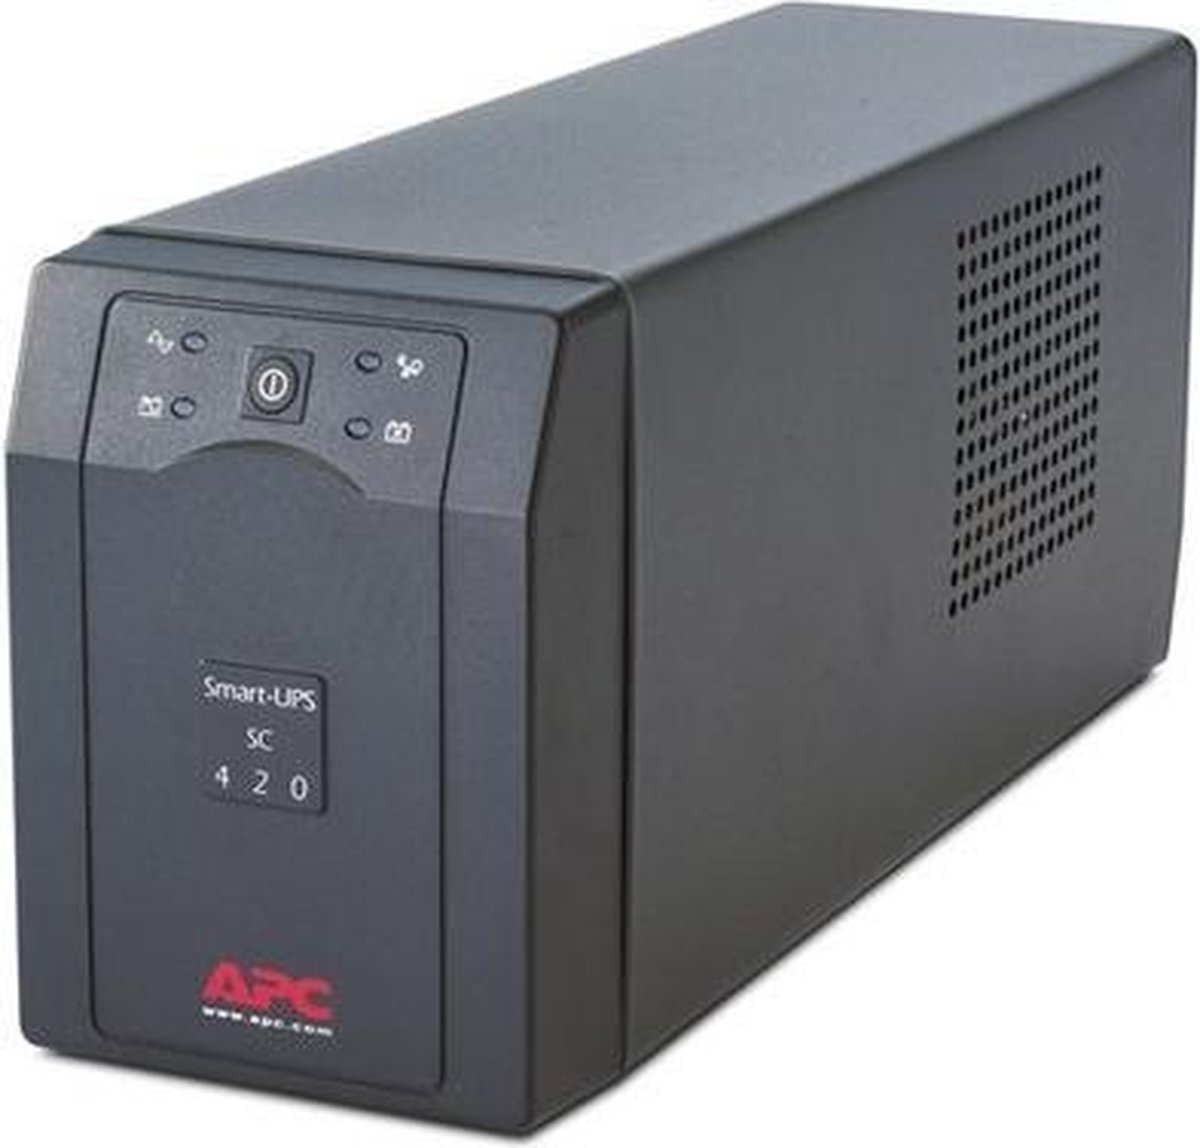 APC Uninterruptible Power Supply - APC Smart-UPS SC 420VA 230V - APC